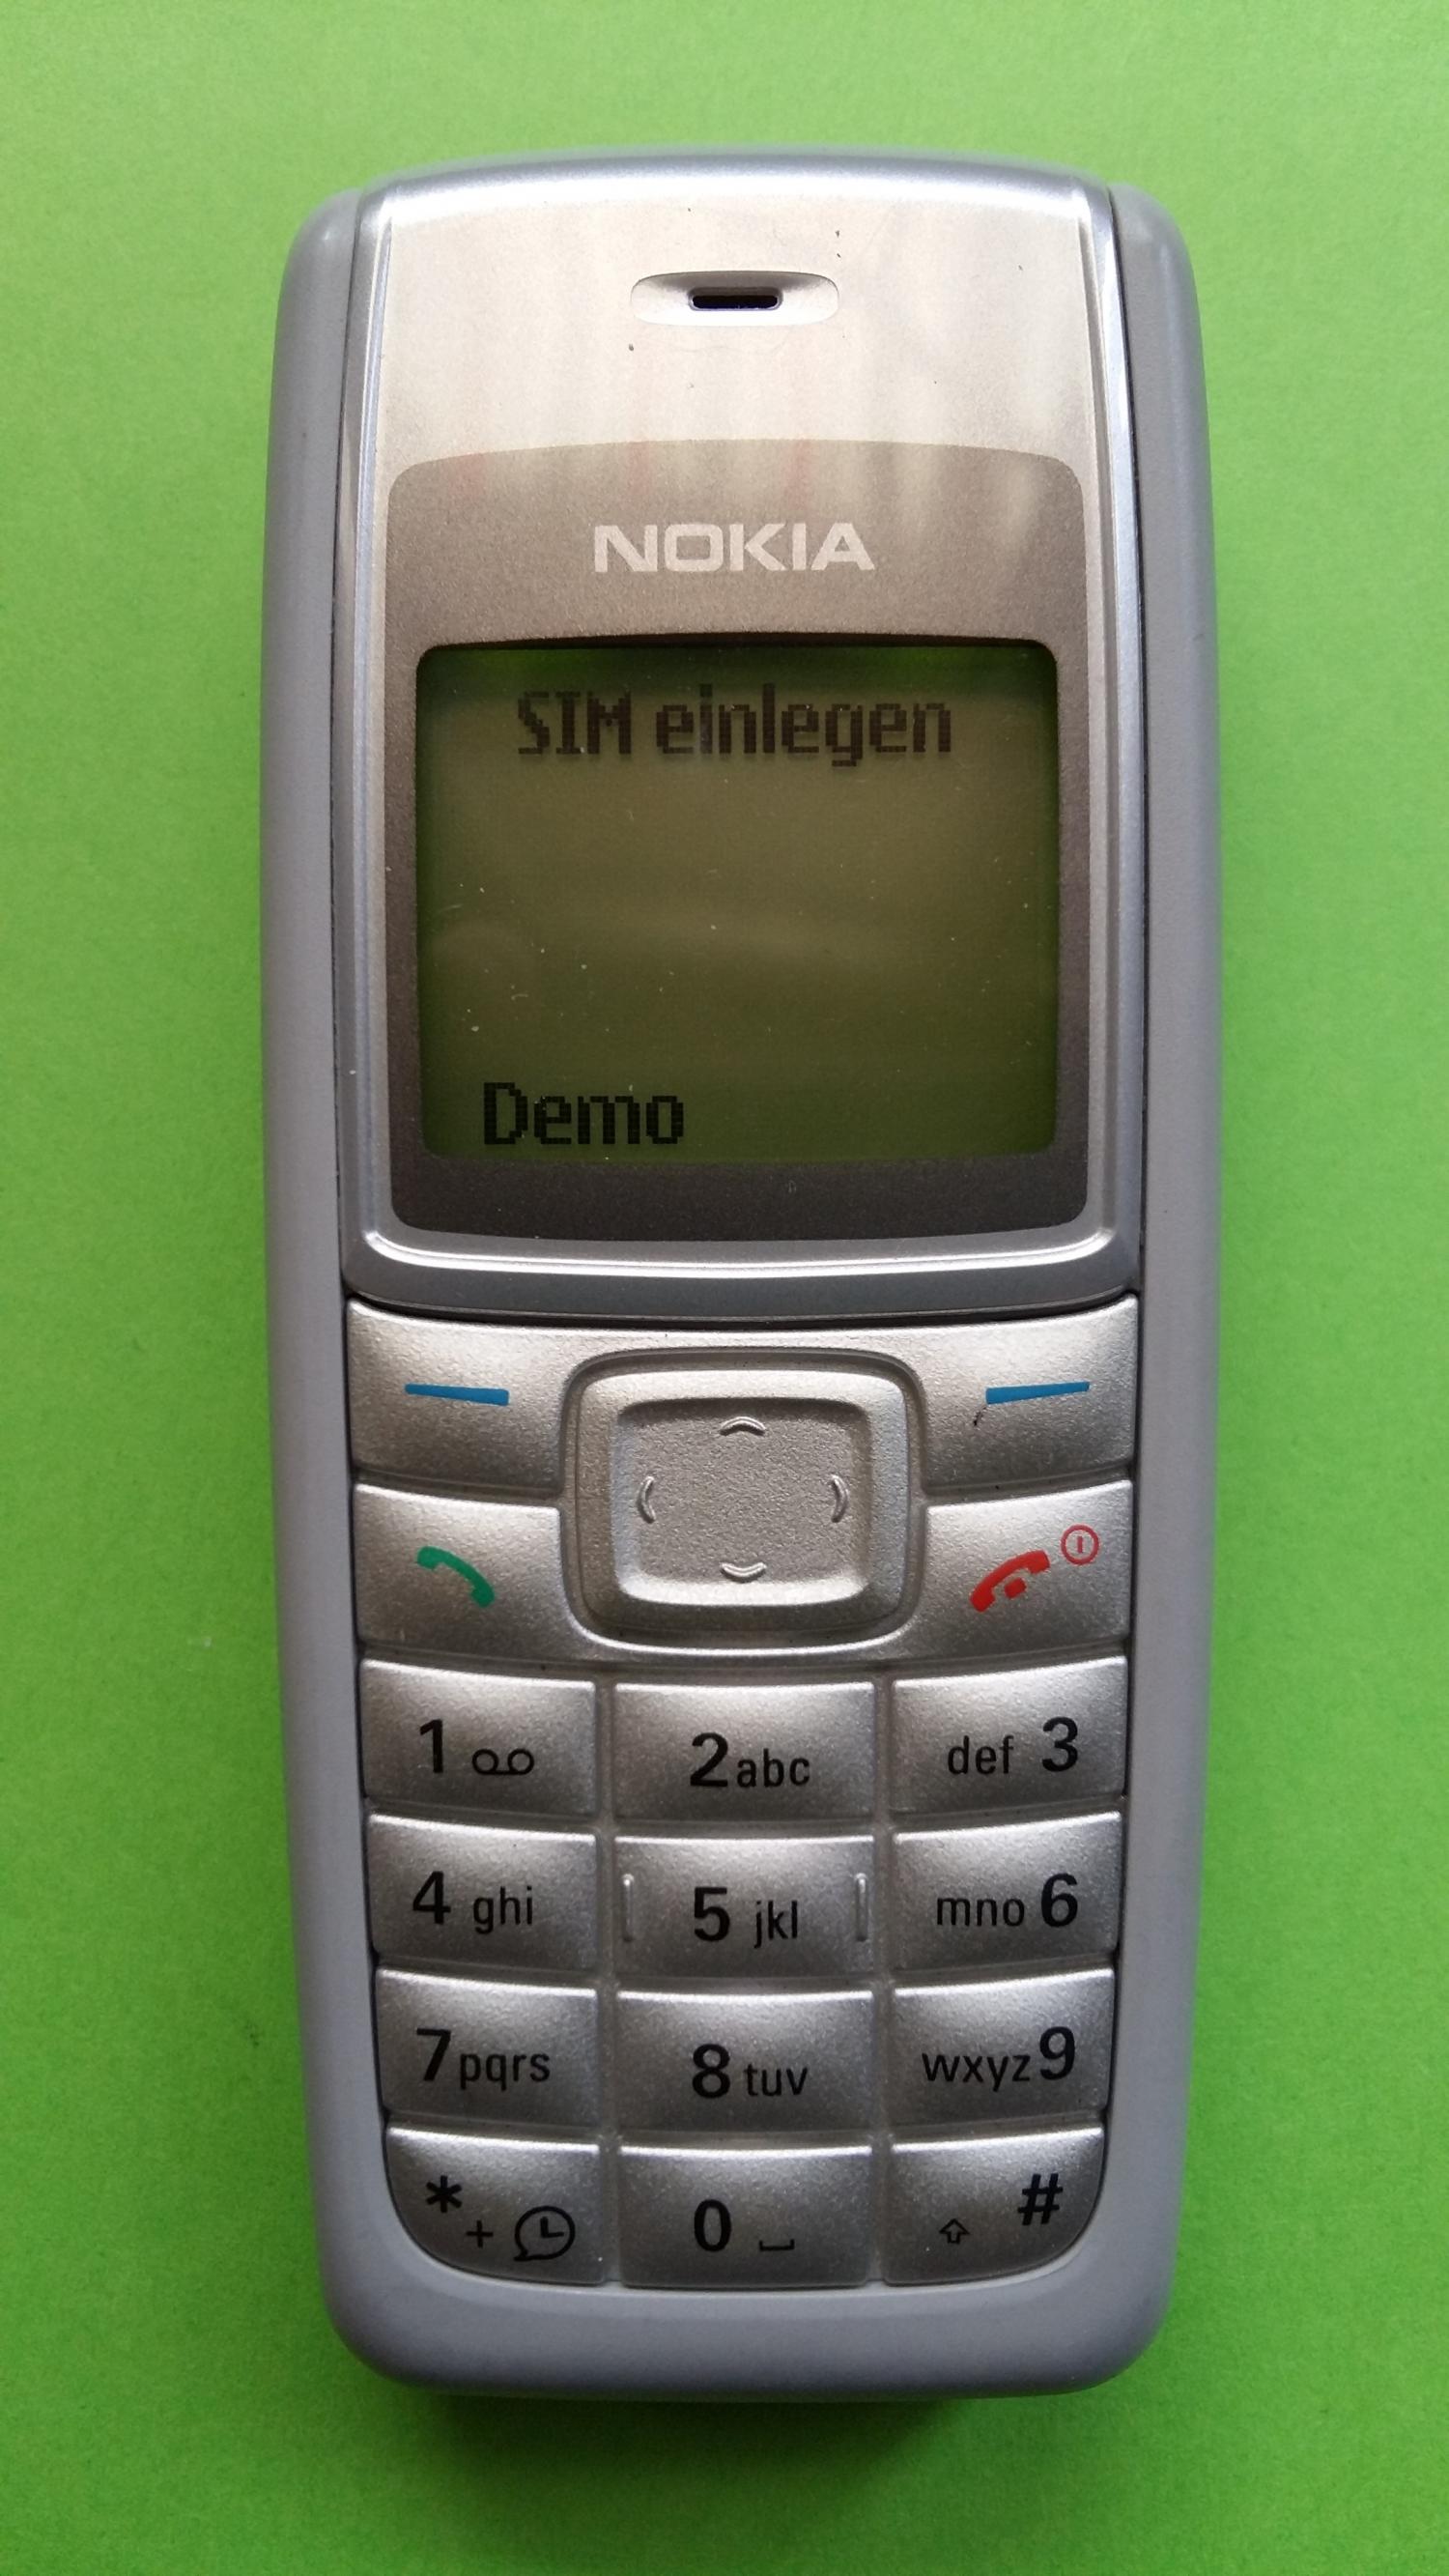 image-7300734-Nokia 1110i (3)1.jpg